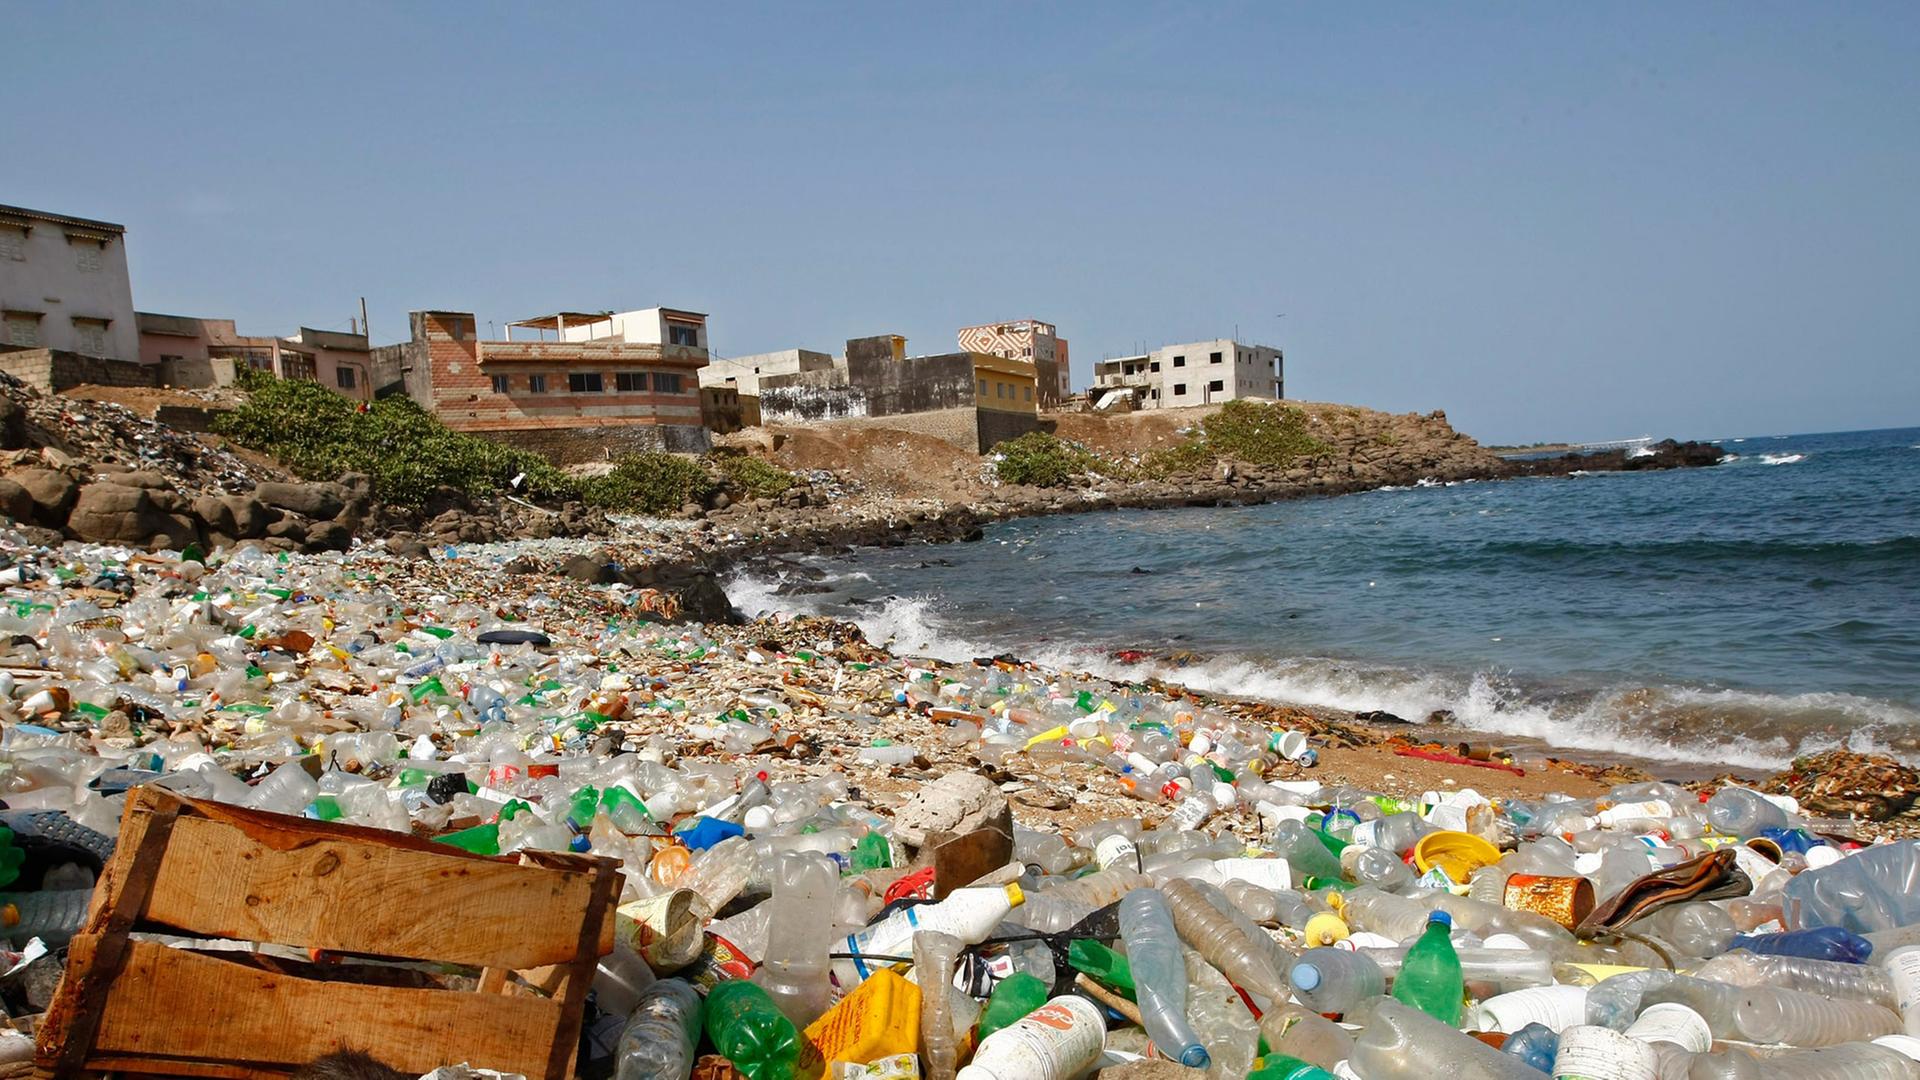 Plastikmüll am Strand von Dakar, Senegal. Im Vordergrund sitzt eine magere Katze